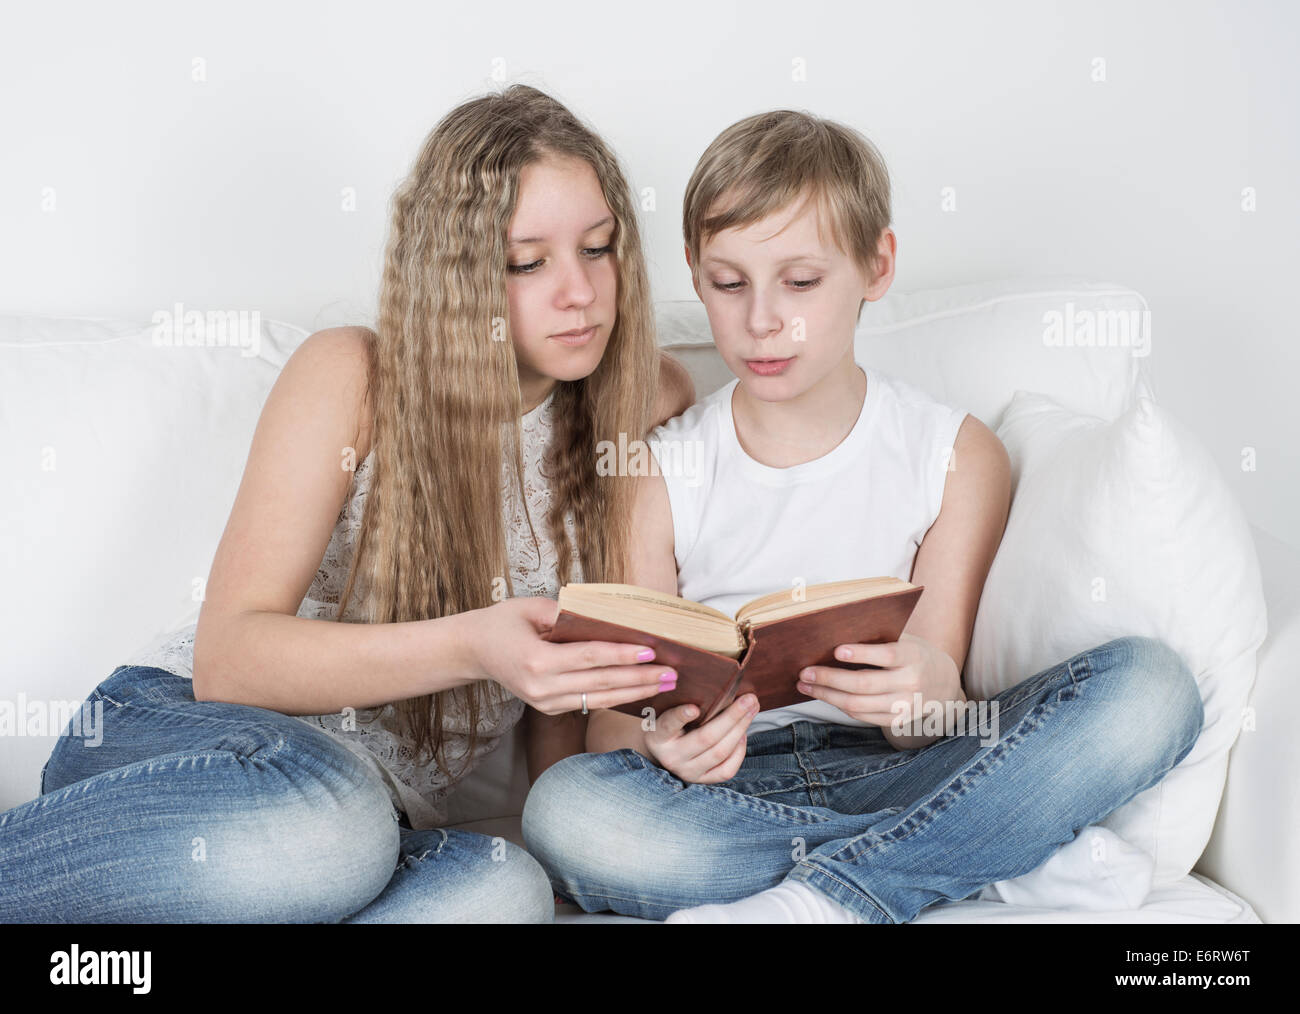 Читал с сестрой читал с ней. Сестра читает уроки. Мальчик и девочка сидят вместе читая книгу.